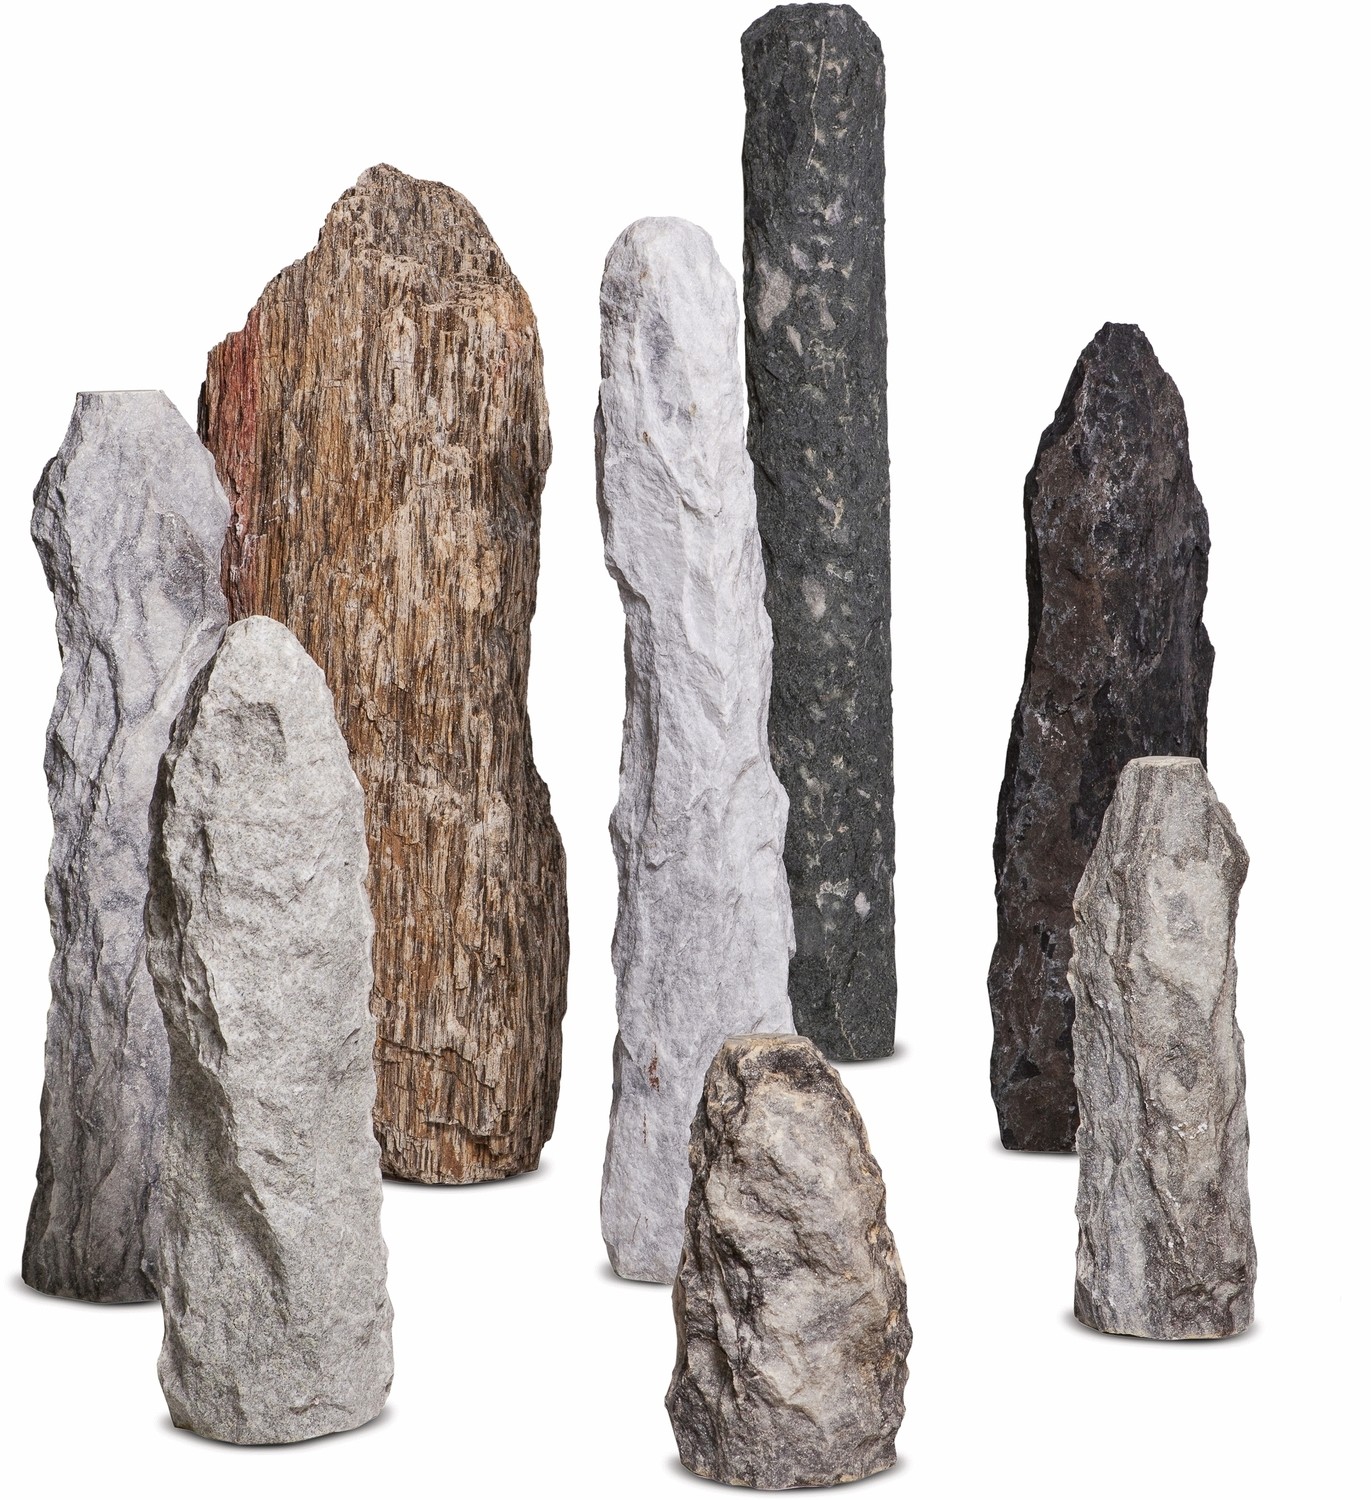 Quellstein aus Granit / Marmor in grau / grün / braun / rot-meliert